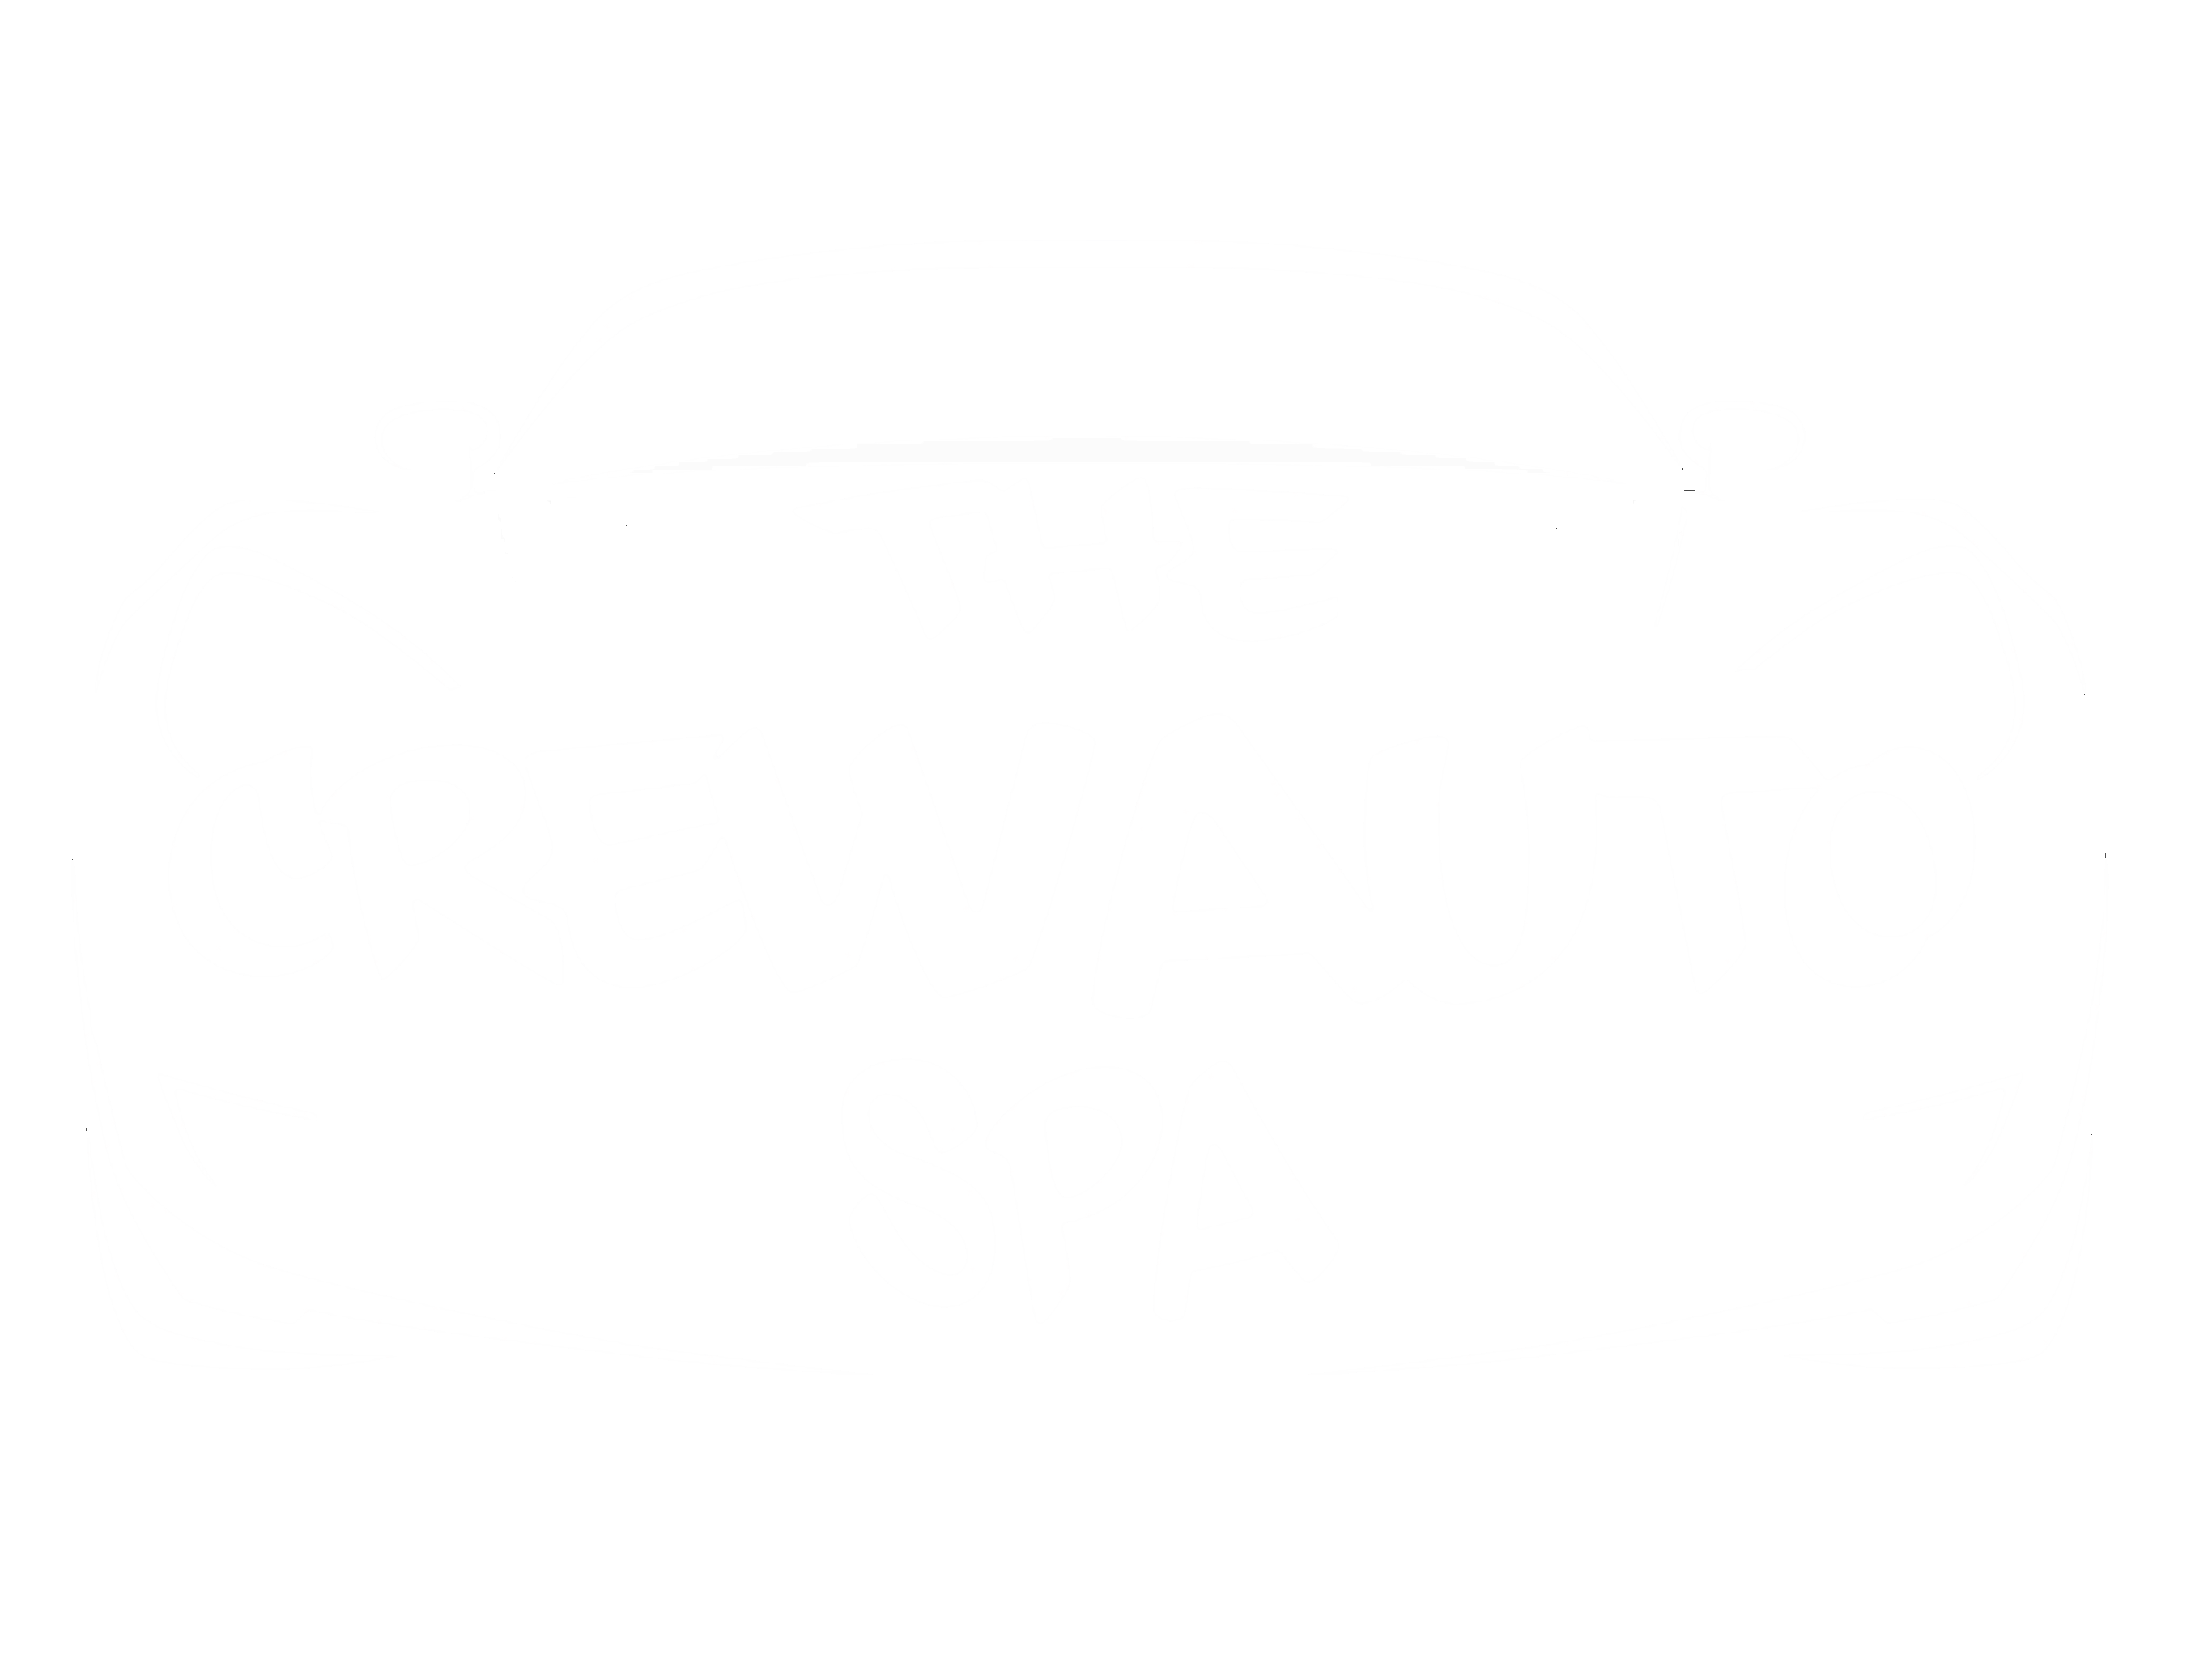 The Crew Auto Spa logo white